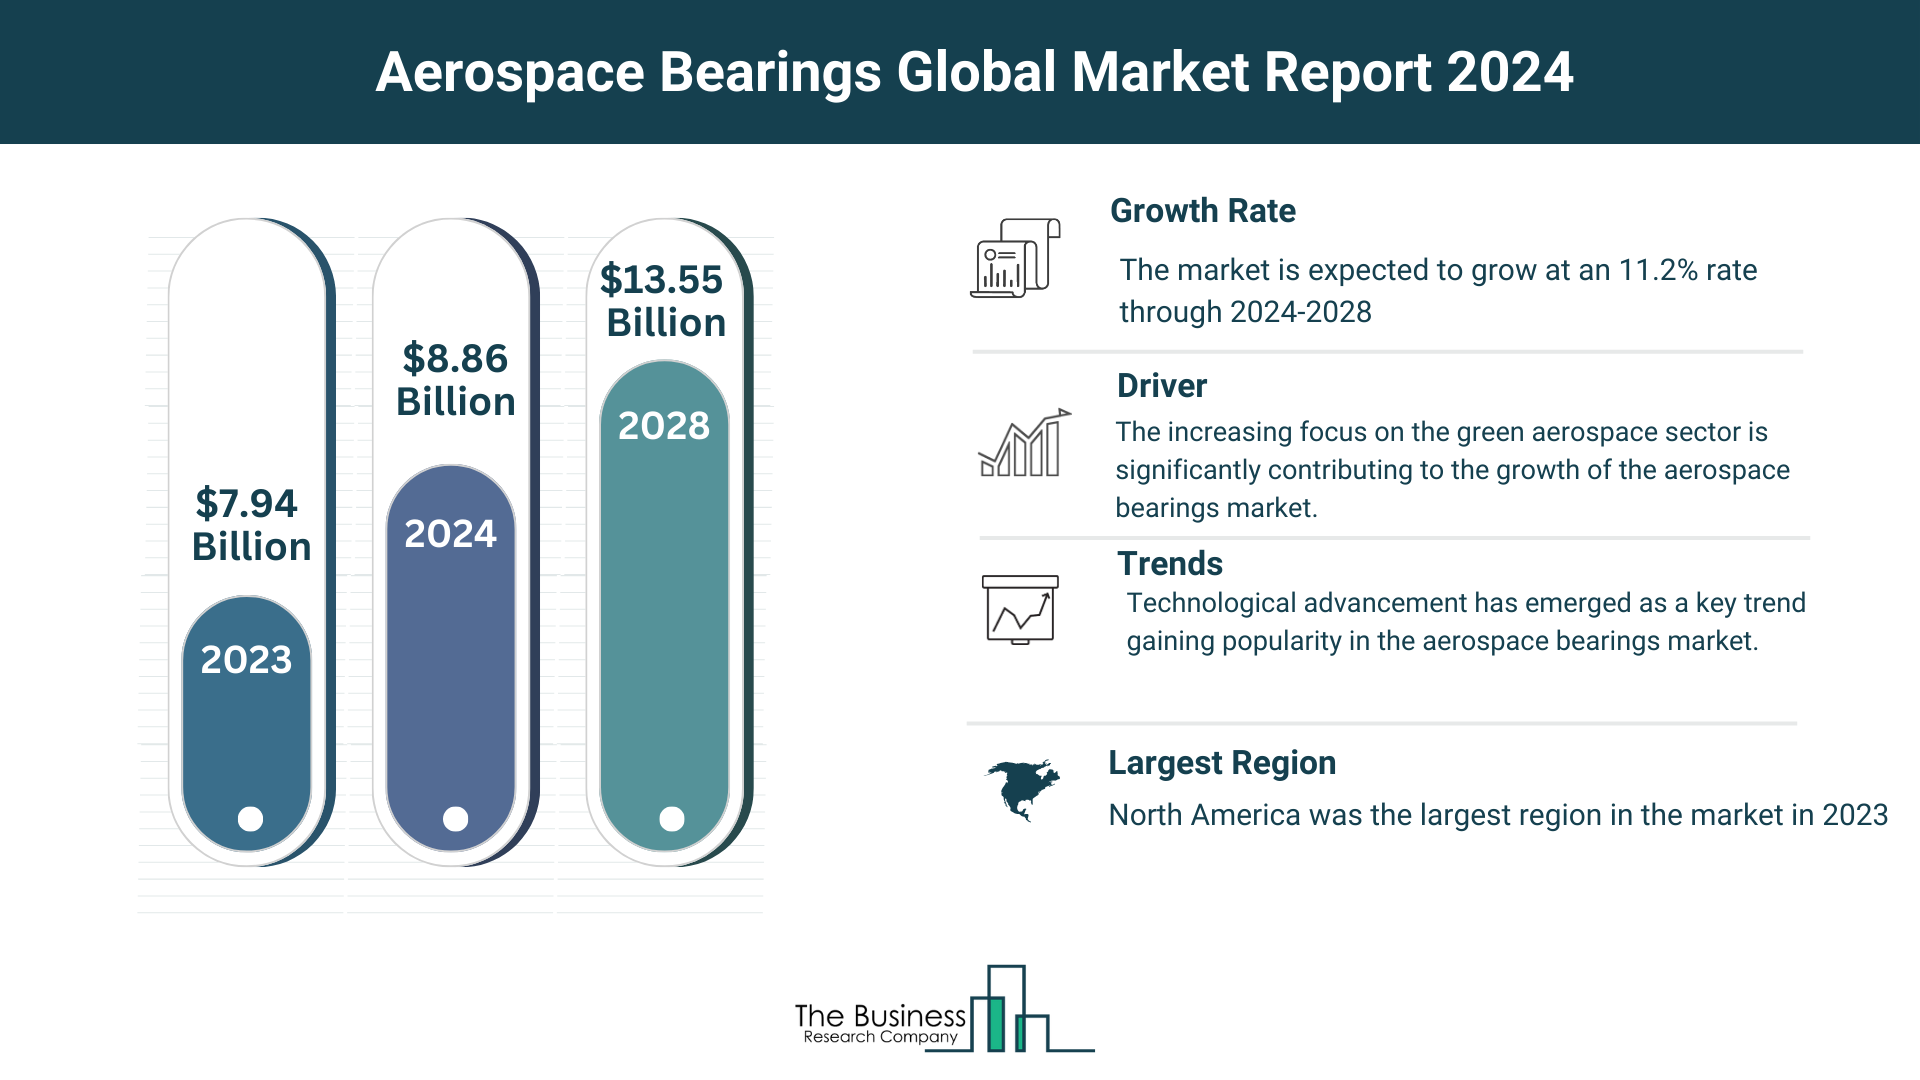 5 Key Takeaways From The Aerospace Bearings Market Report 2024